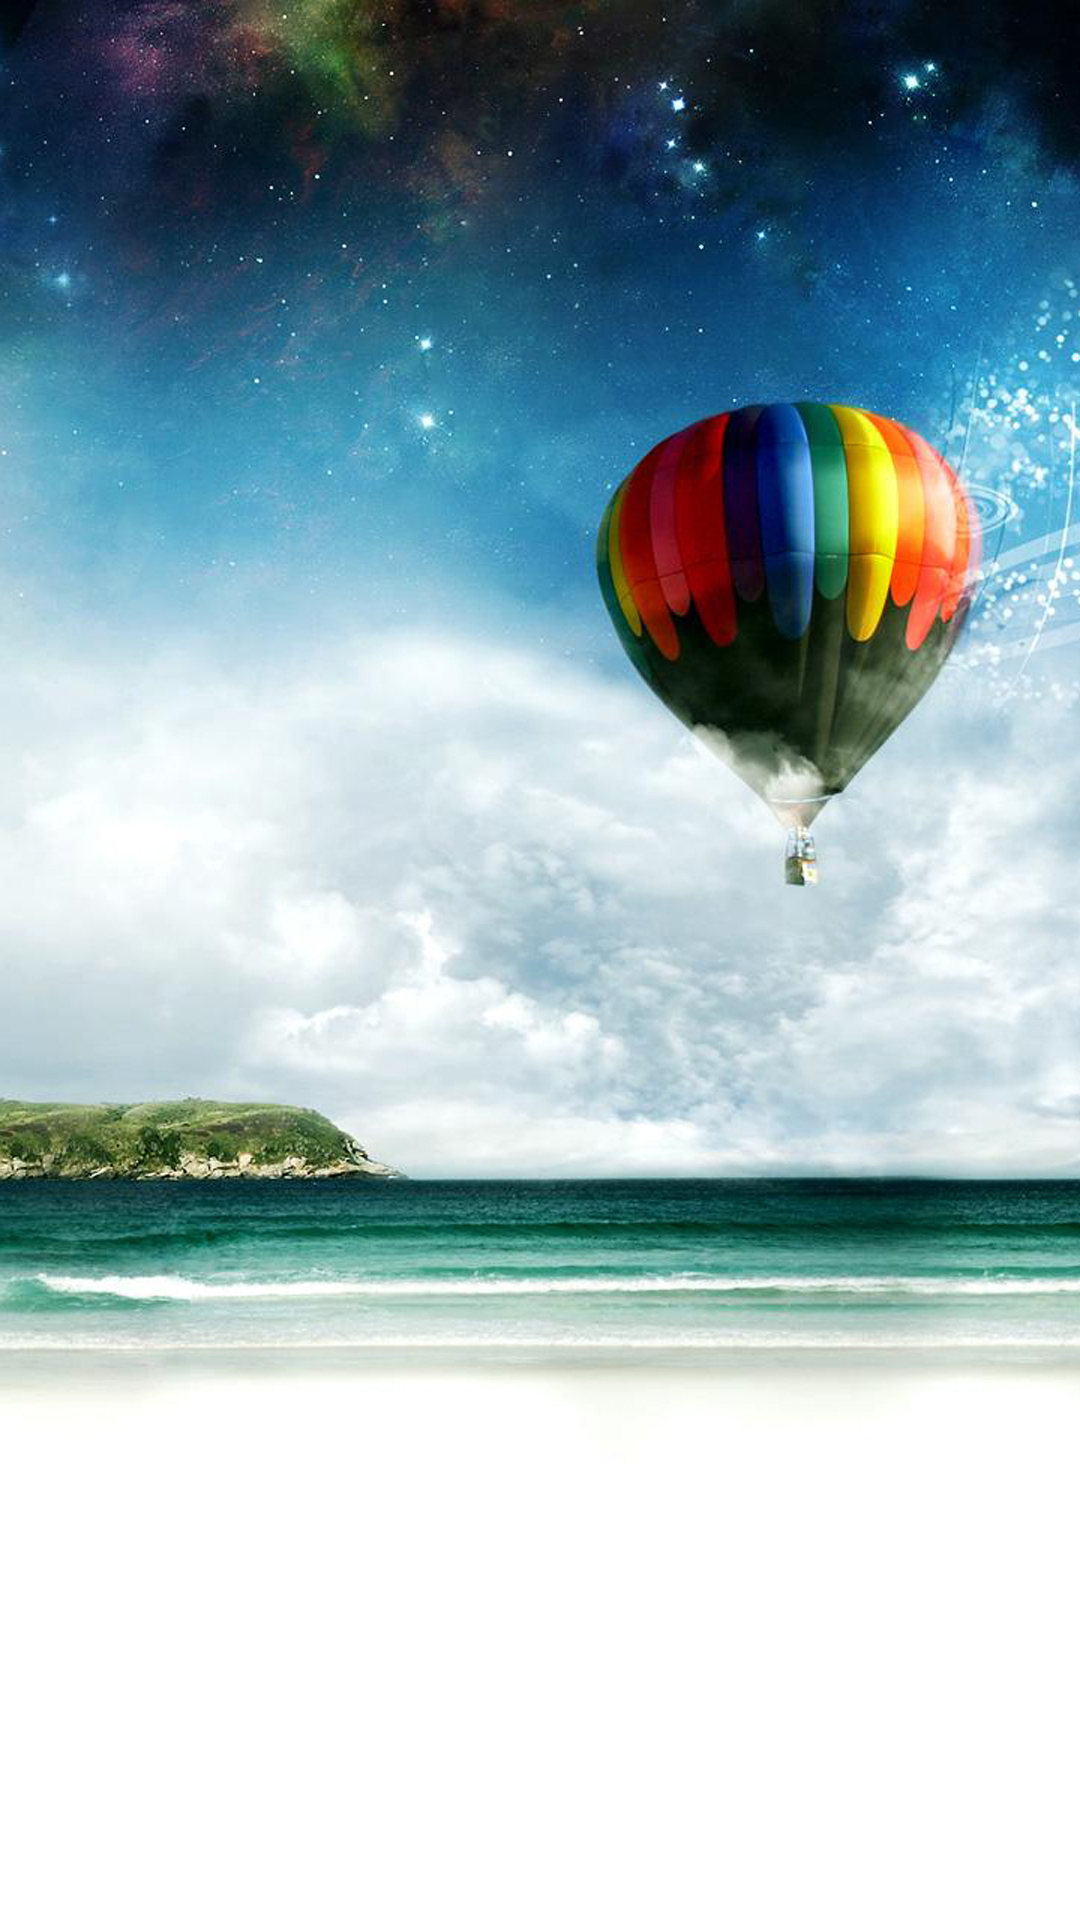 サムスンs4ライブ壁紙,熱気球,熱気球,空,雰囲気,雲